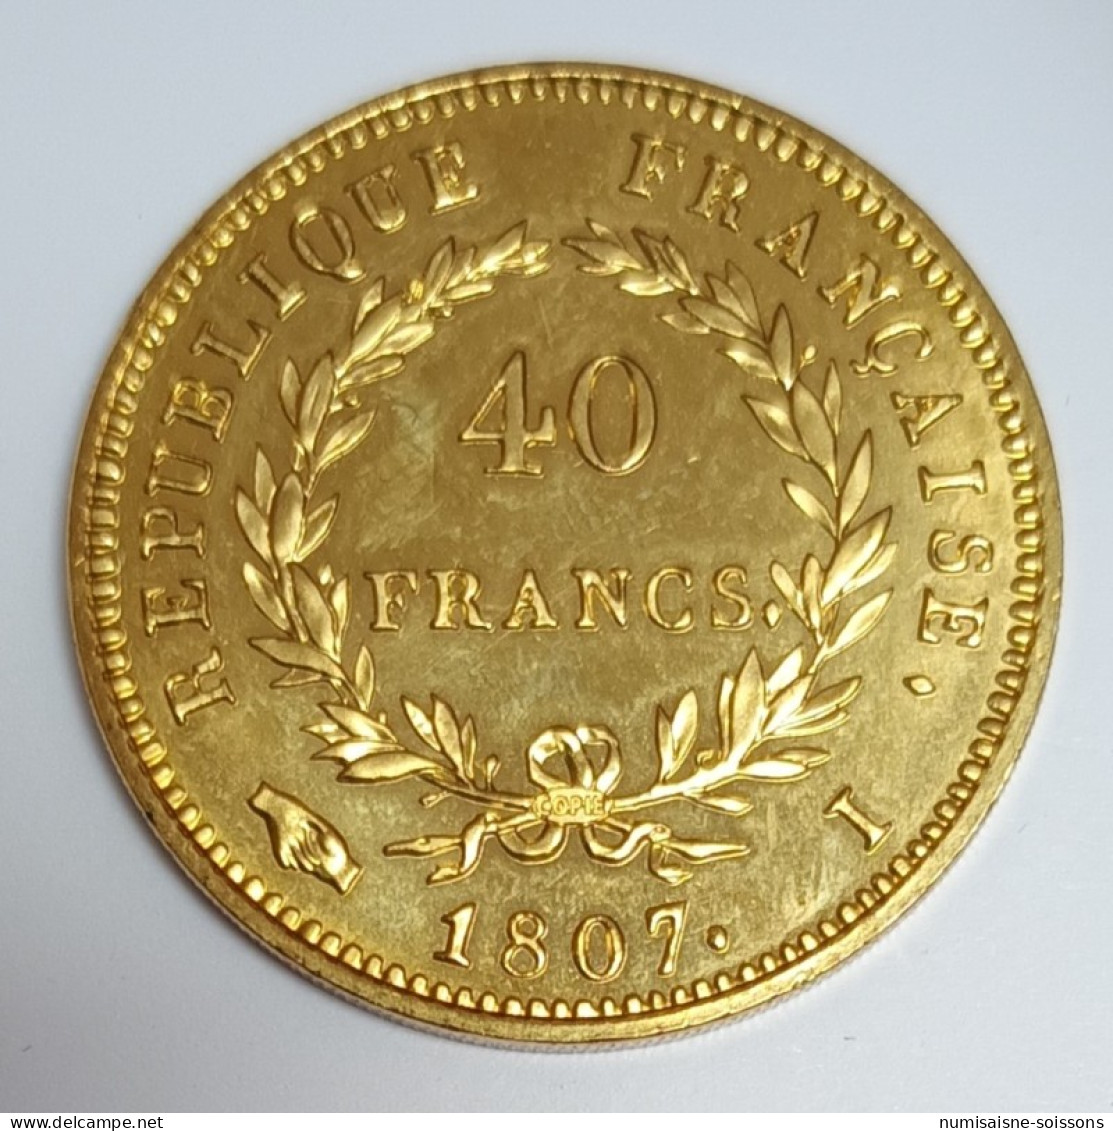 FRANCE - REPRODUCTION - 40 FRANCS 1807 - NAPOLÉON 1ER - CUIVRE DORÉ - SPL - 40 Francs (oro)